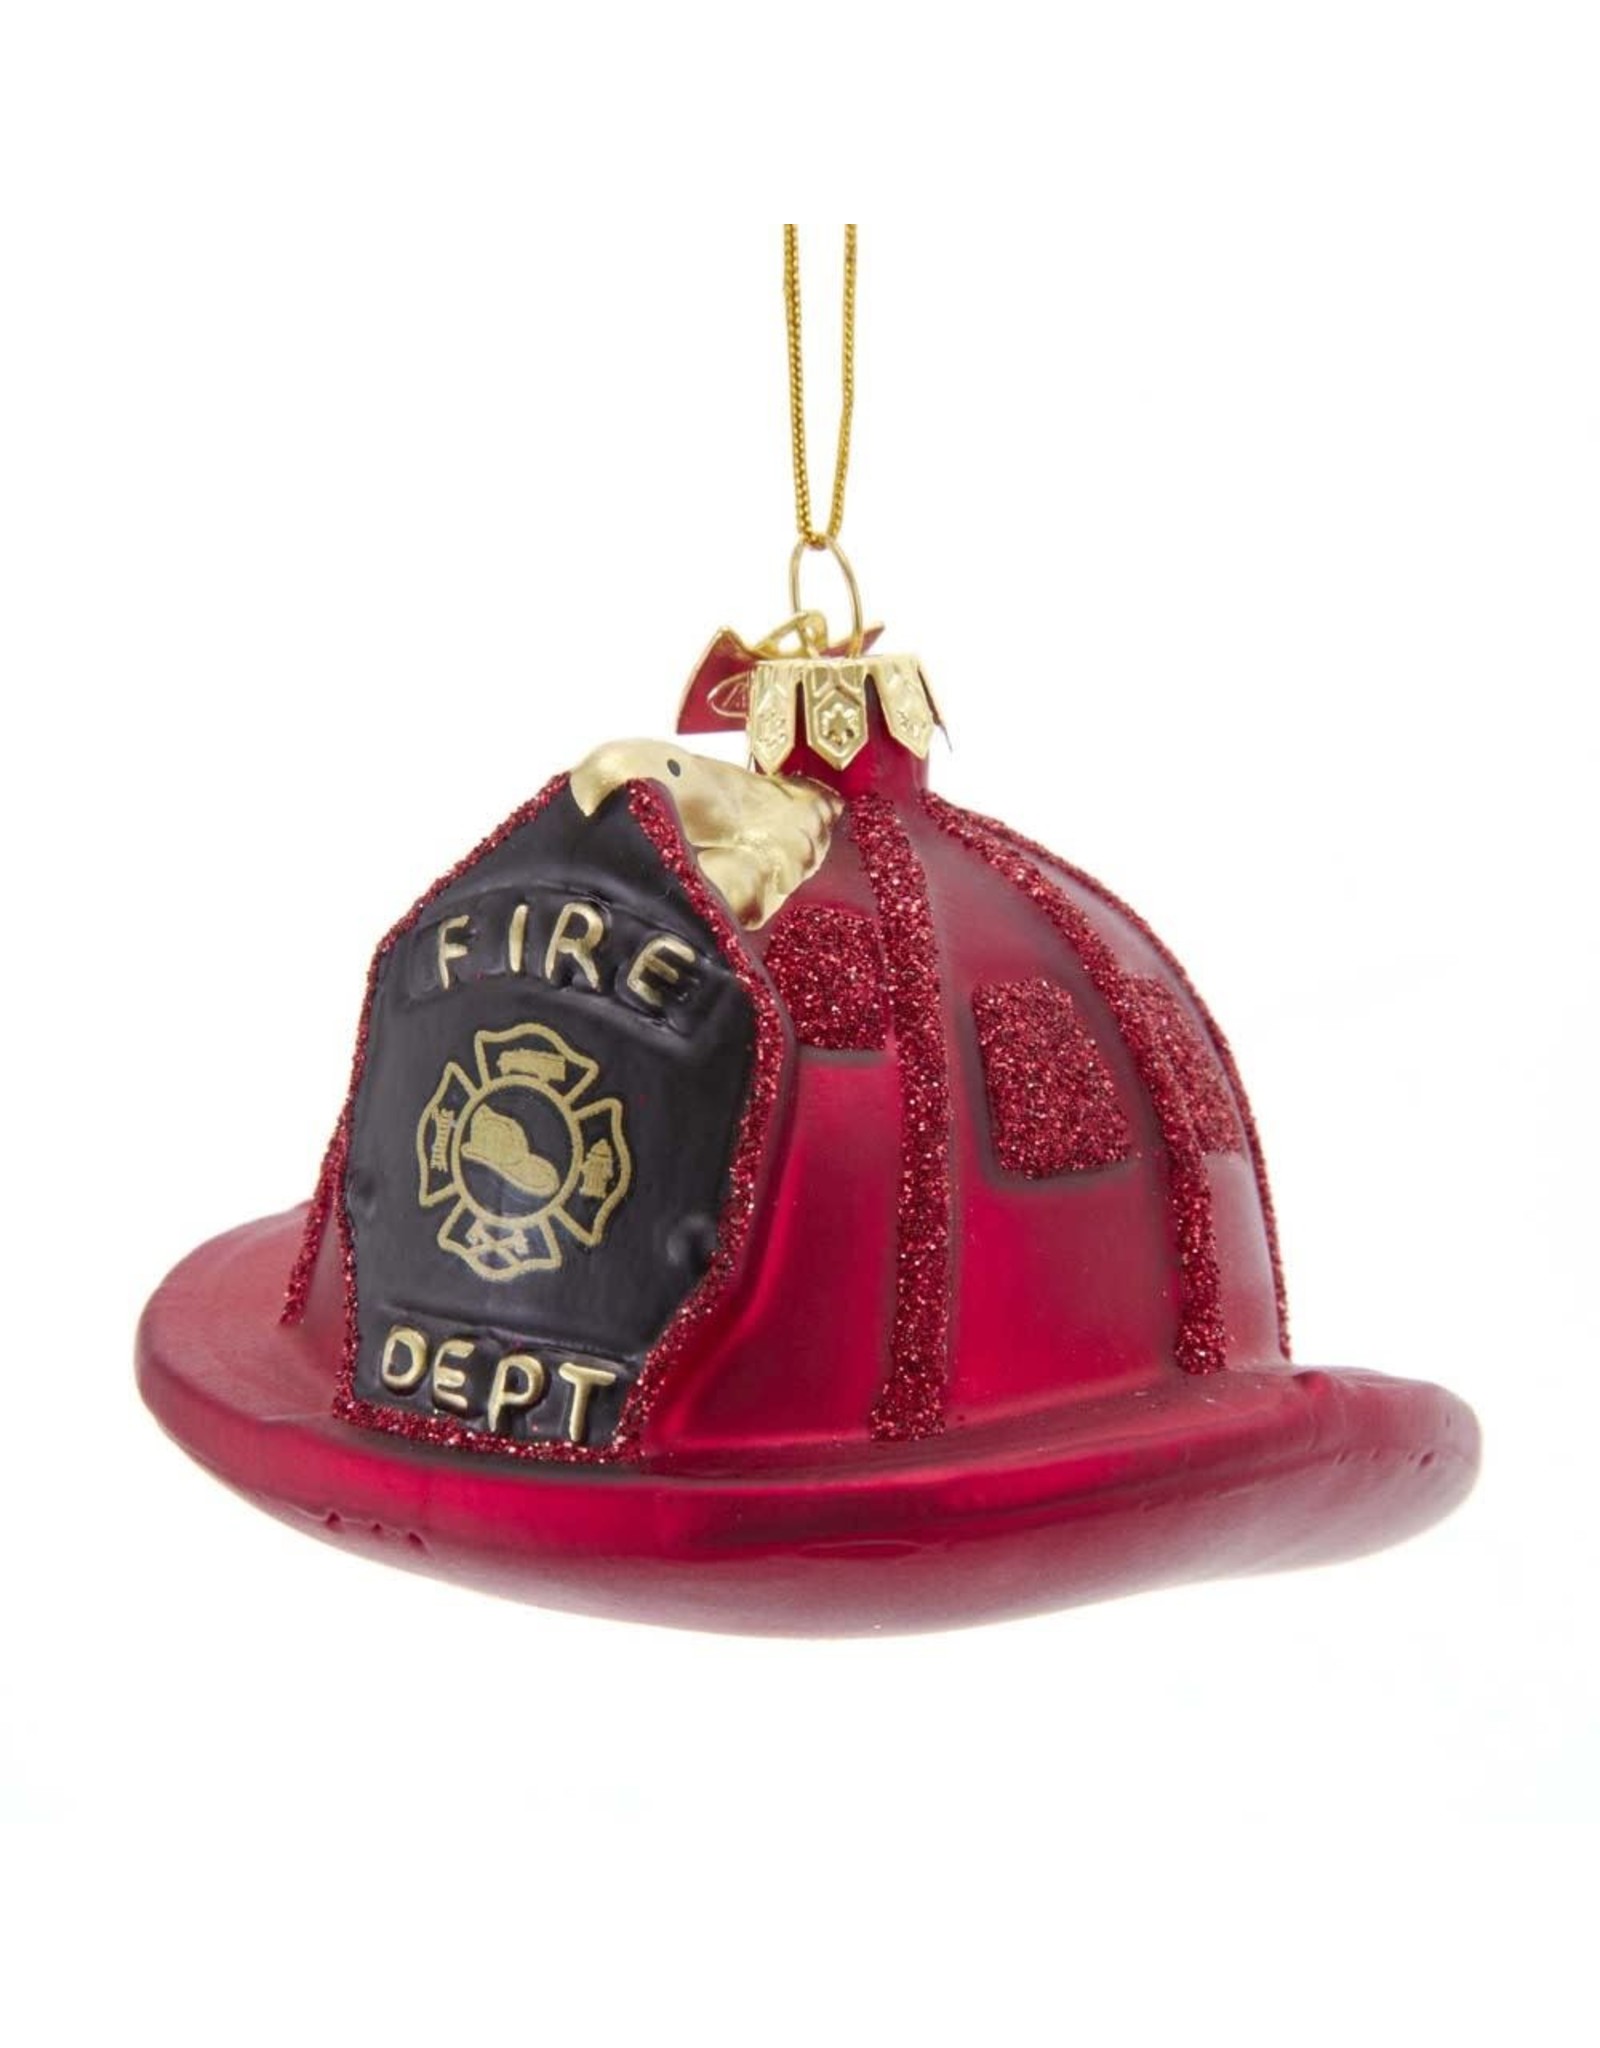 Kurt Adler Firefighters Hat Glass Nobel Gems Ornament 3.5 Inches